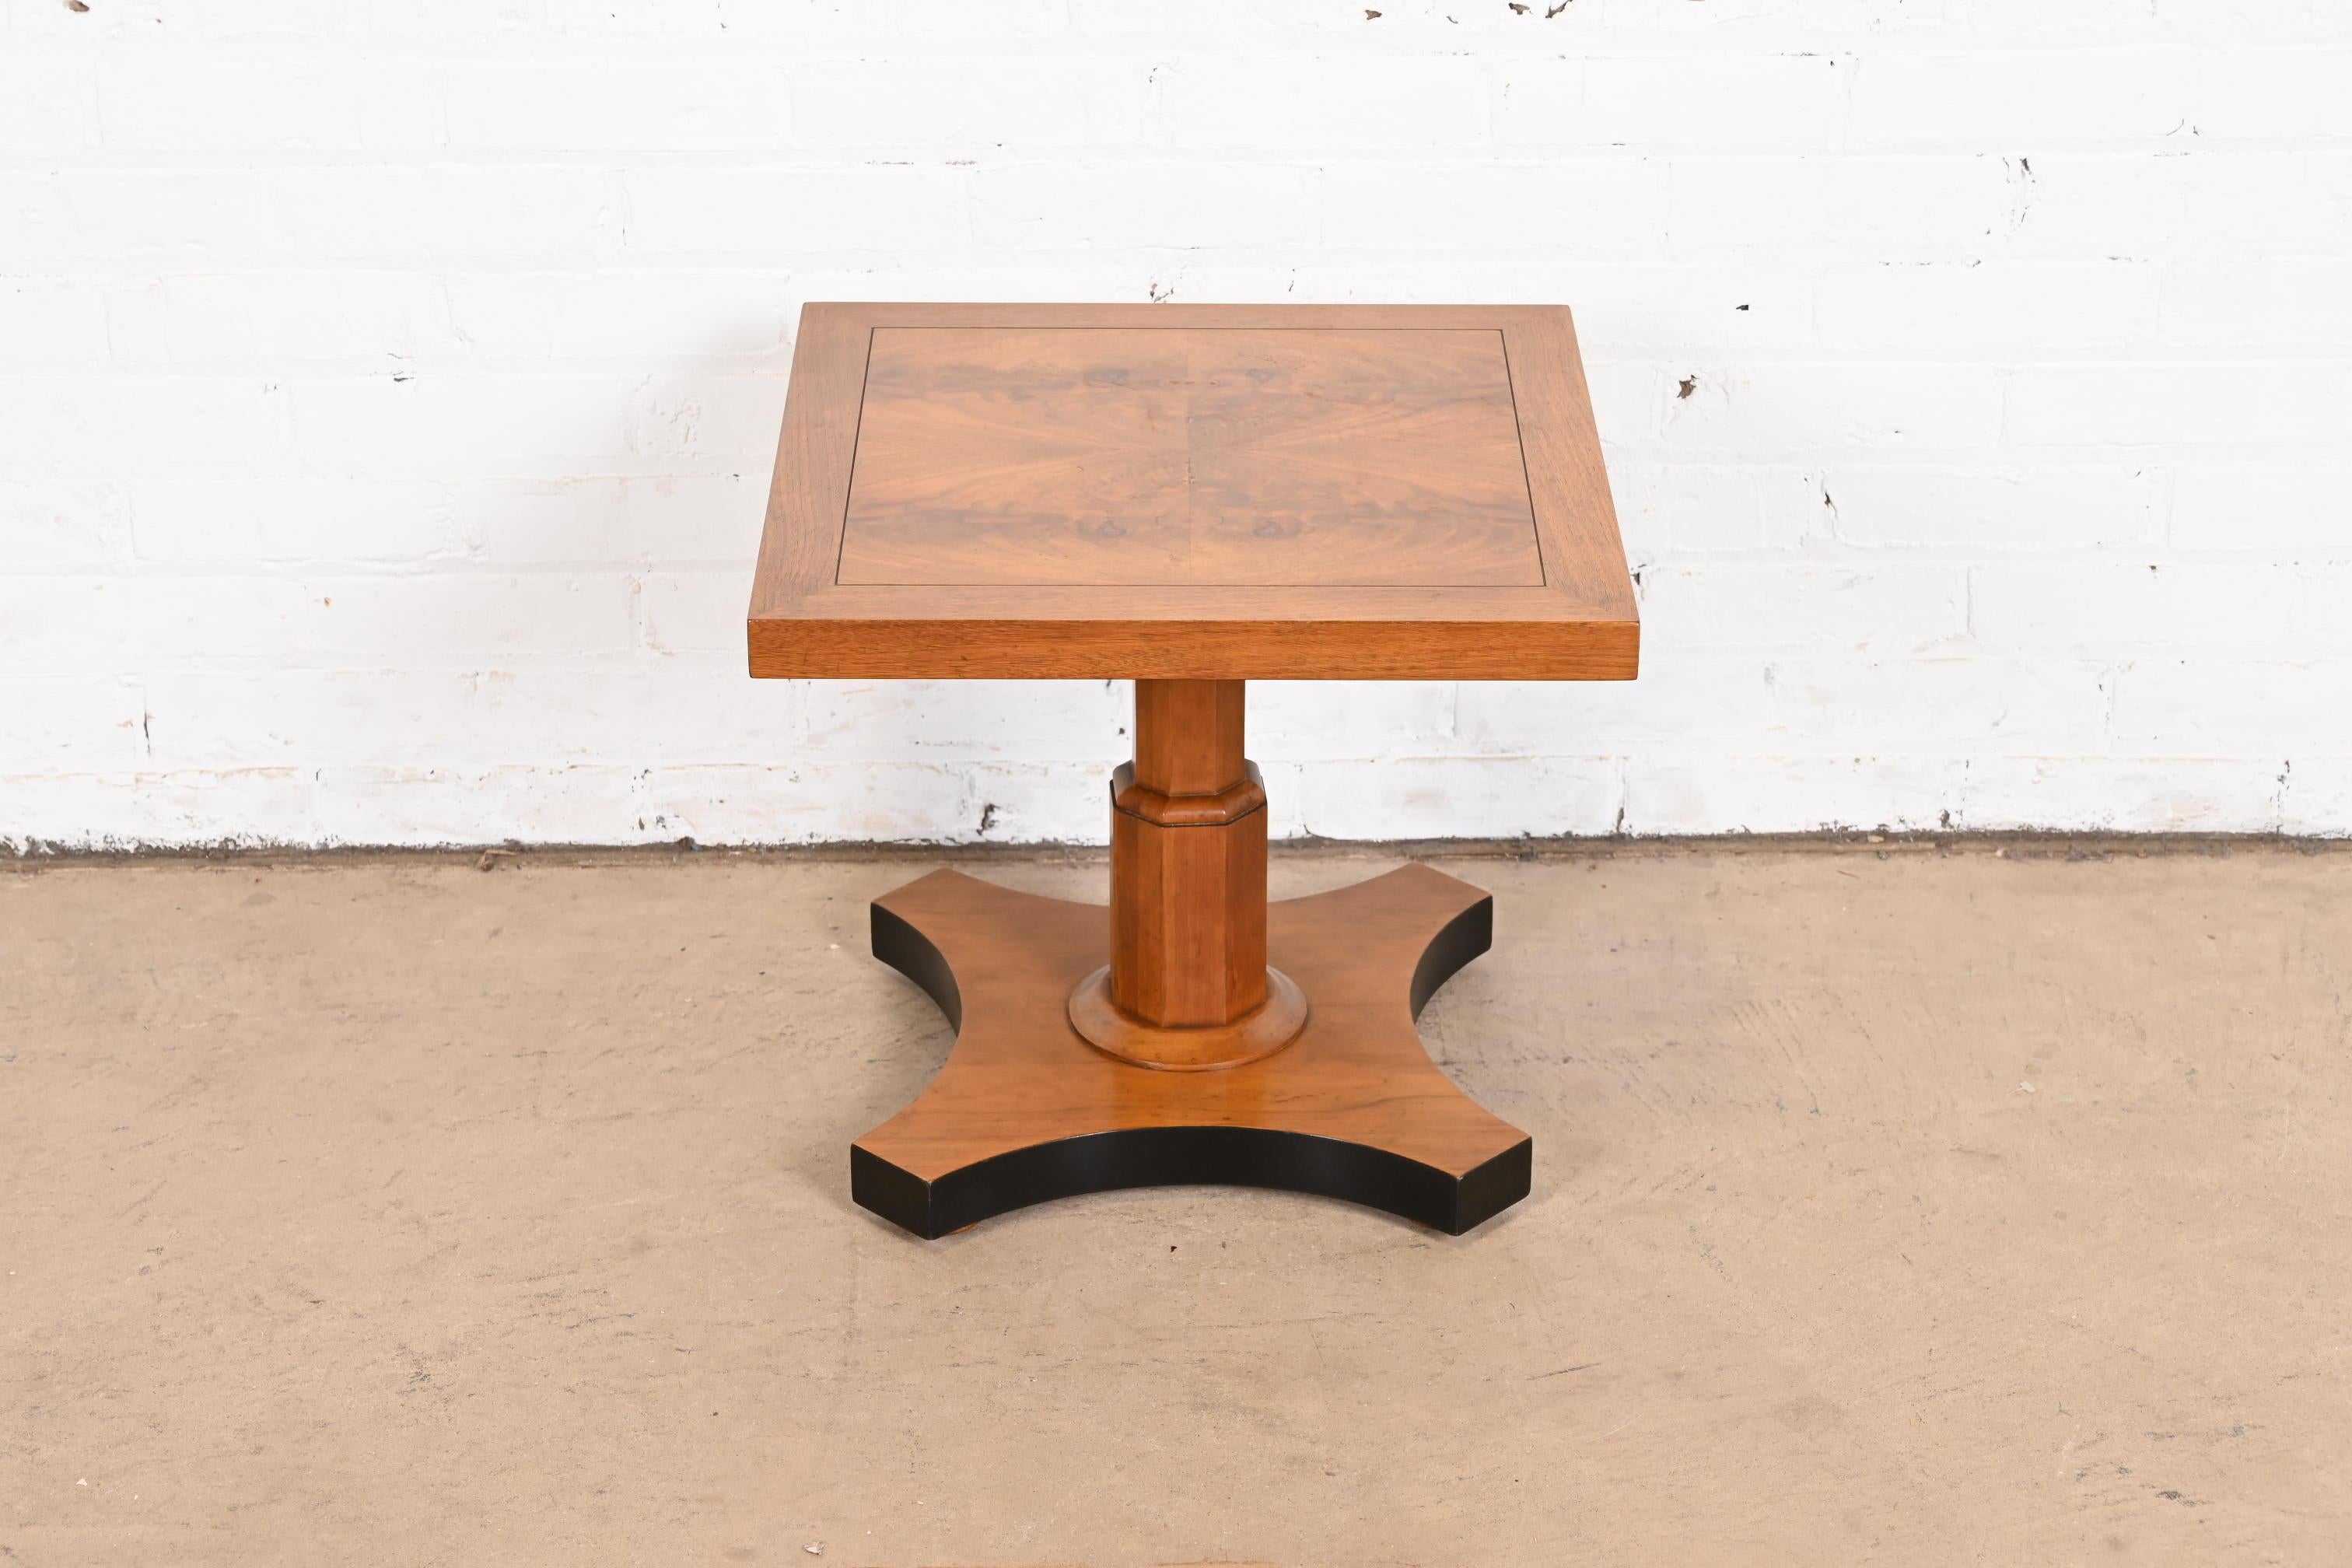 Ein prächtiger Teetisch oder Beistelltisch aus genopptem Nussbaum im neoklassischen oder Regency-Stil

Von Baker Furniture

USA, ca. 1960er Jahre

Maße: 18 